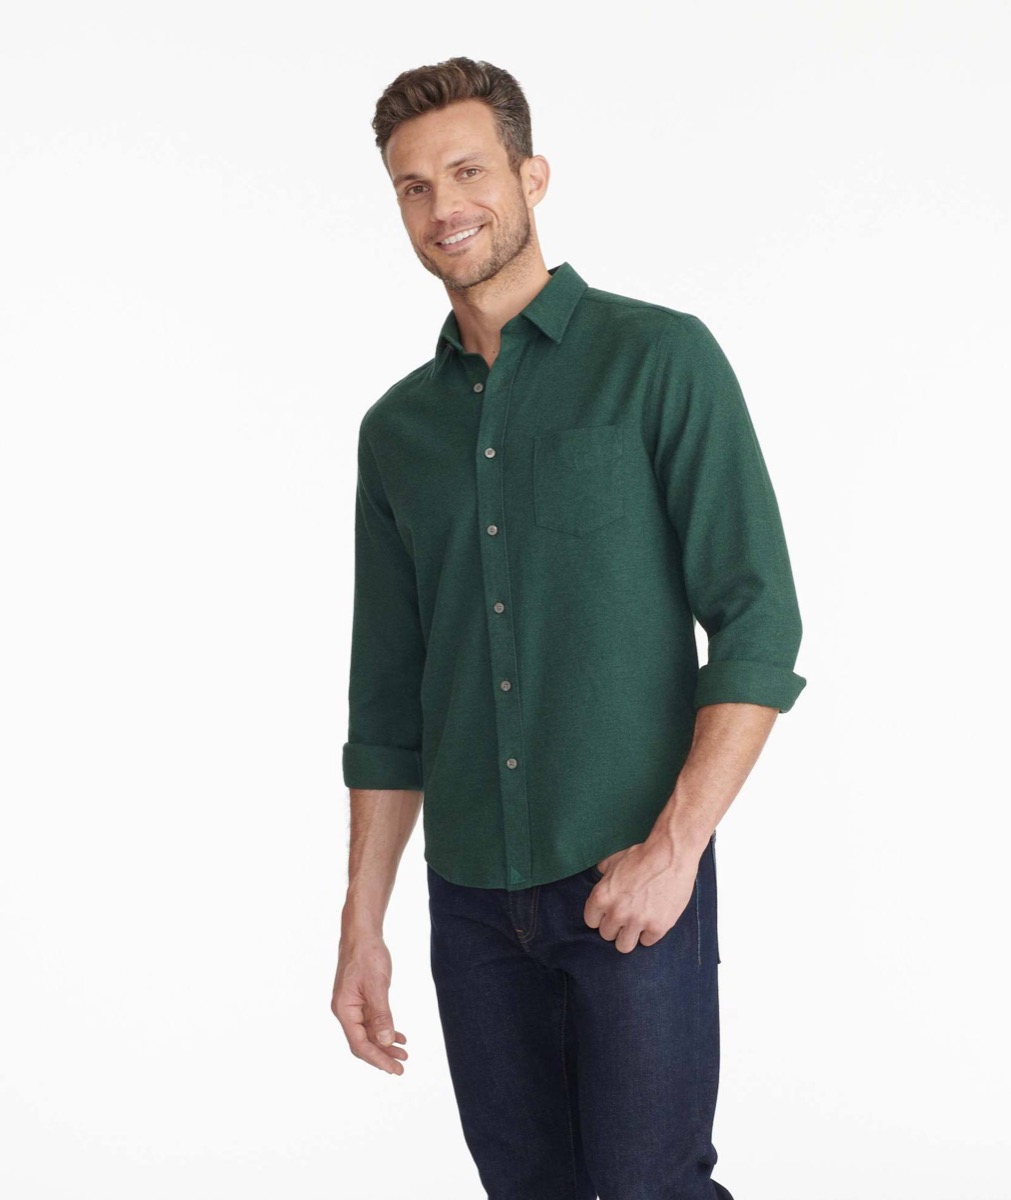 A man wearing a green flannel shirt